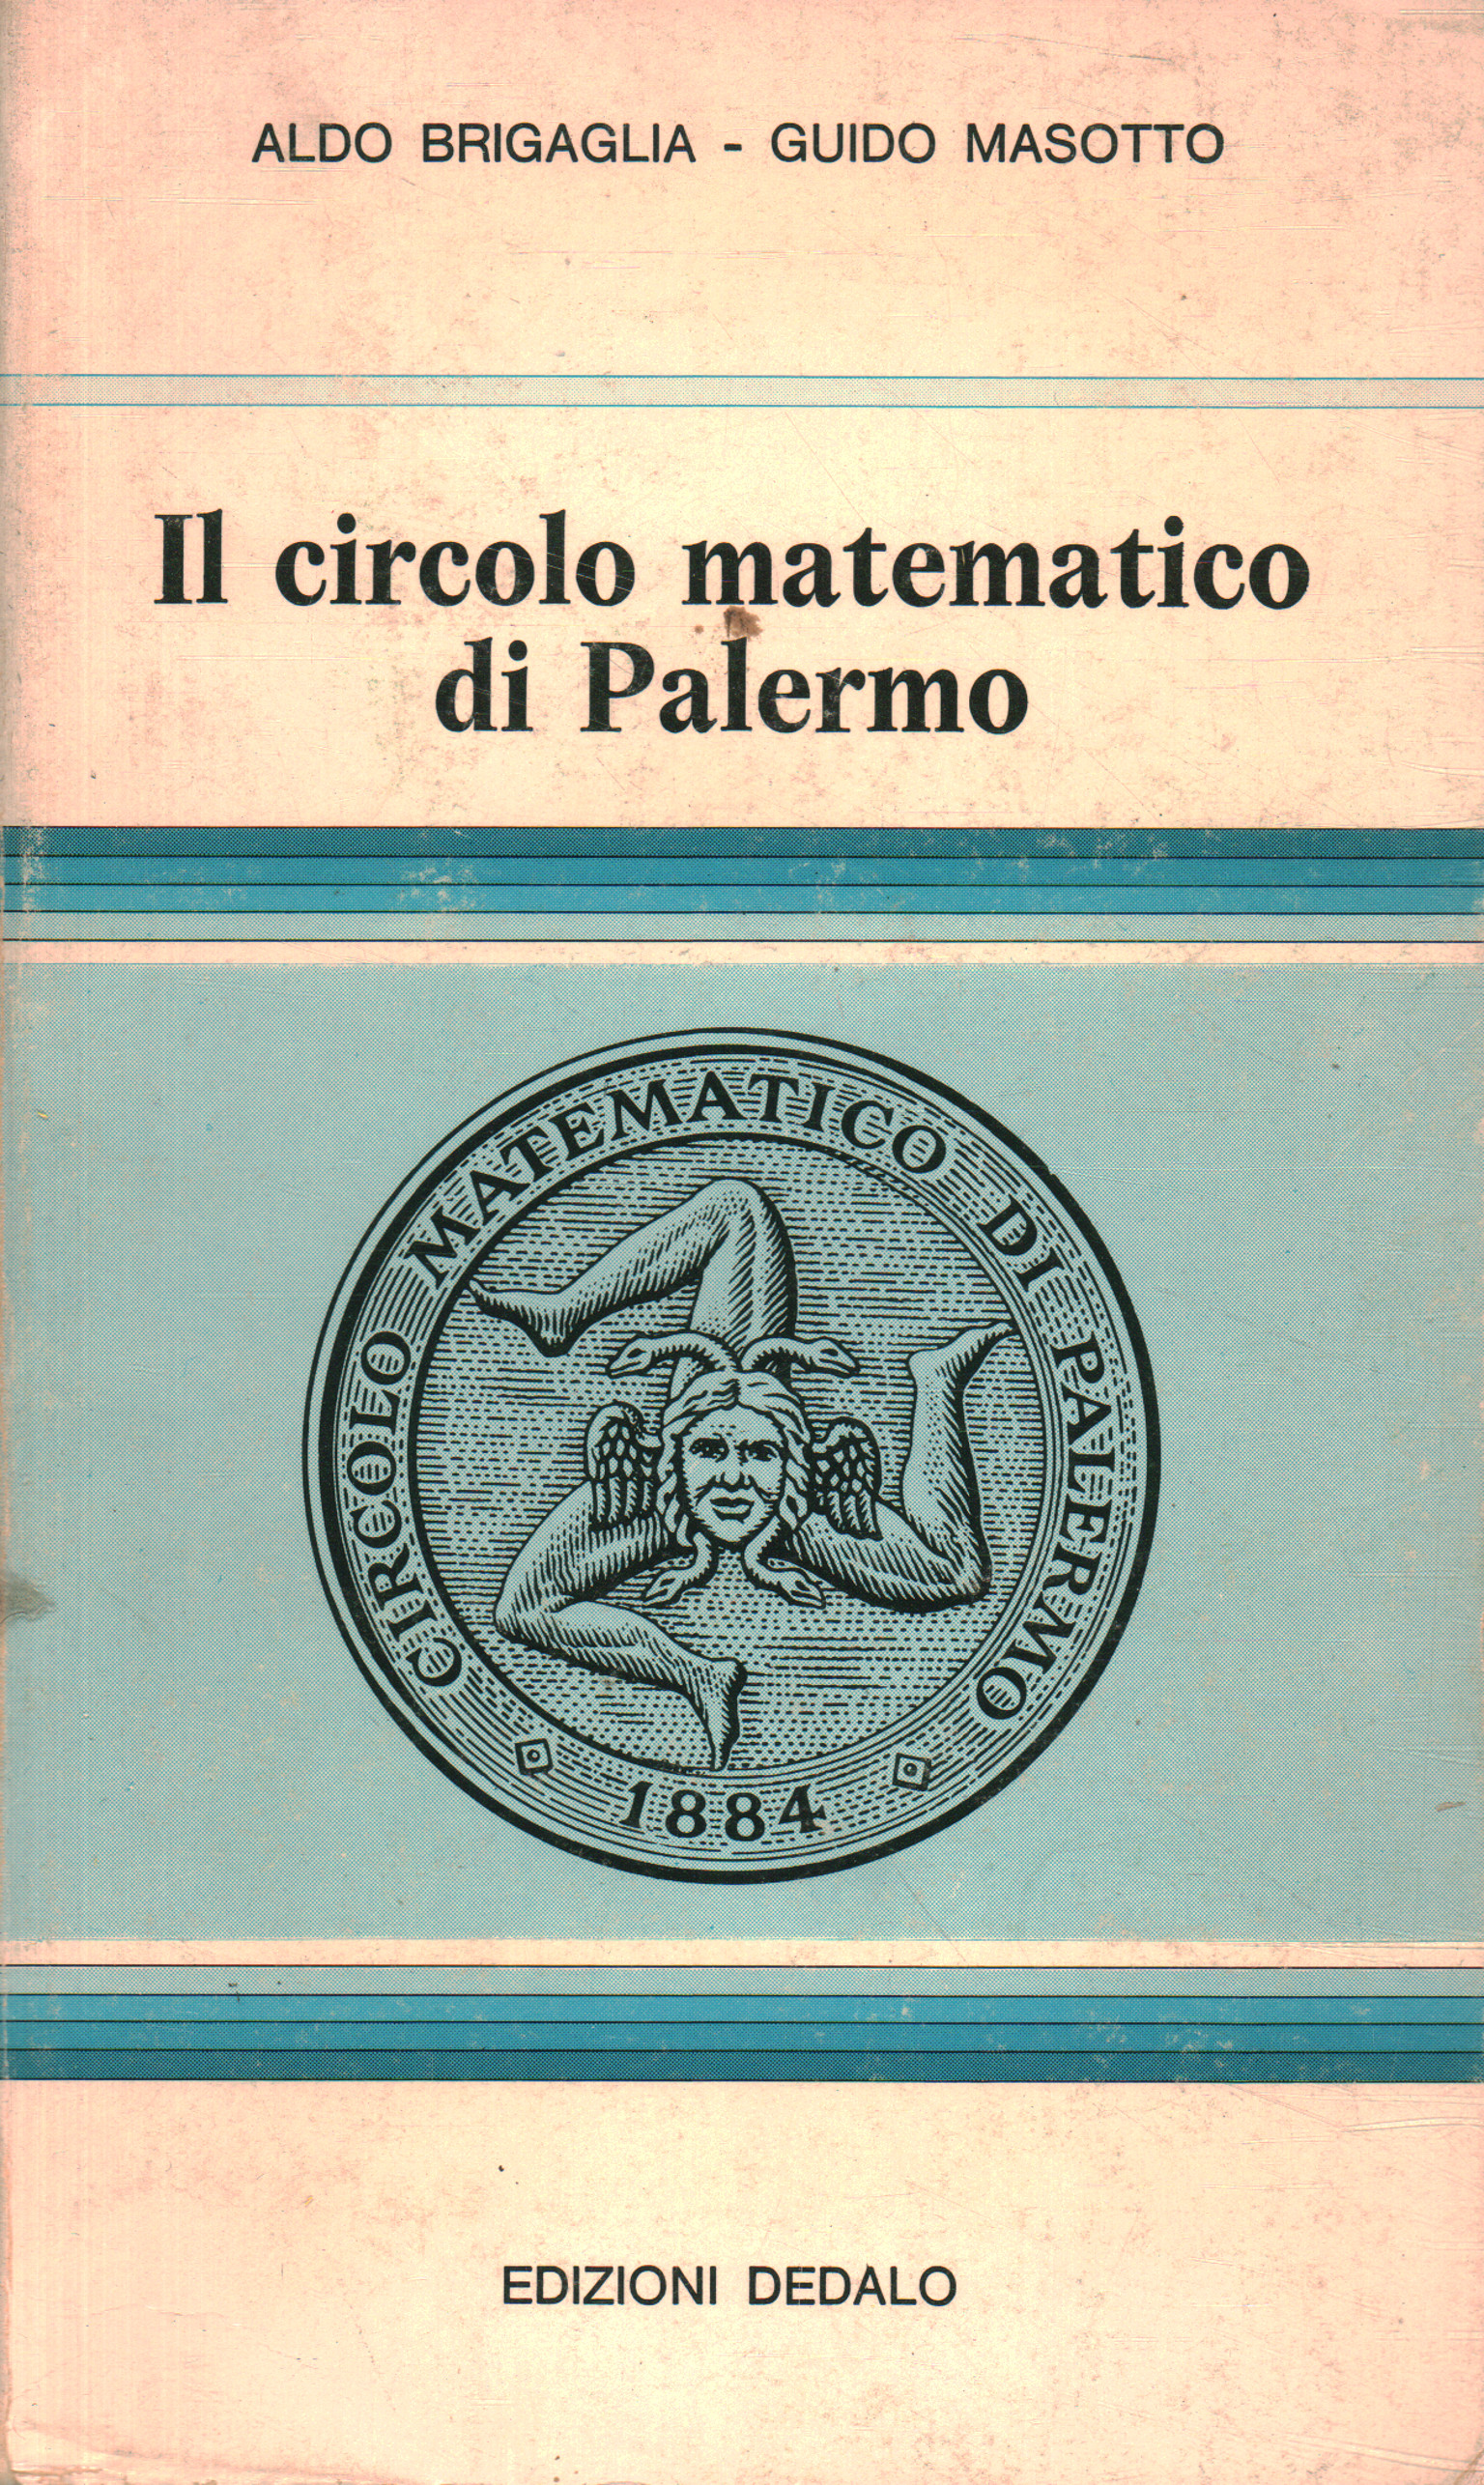 Der mathematische Kreis von Palermo